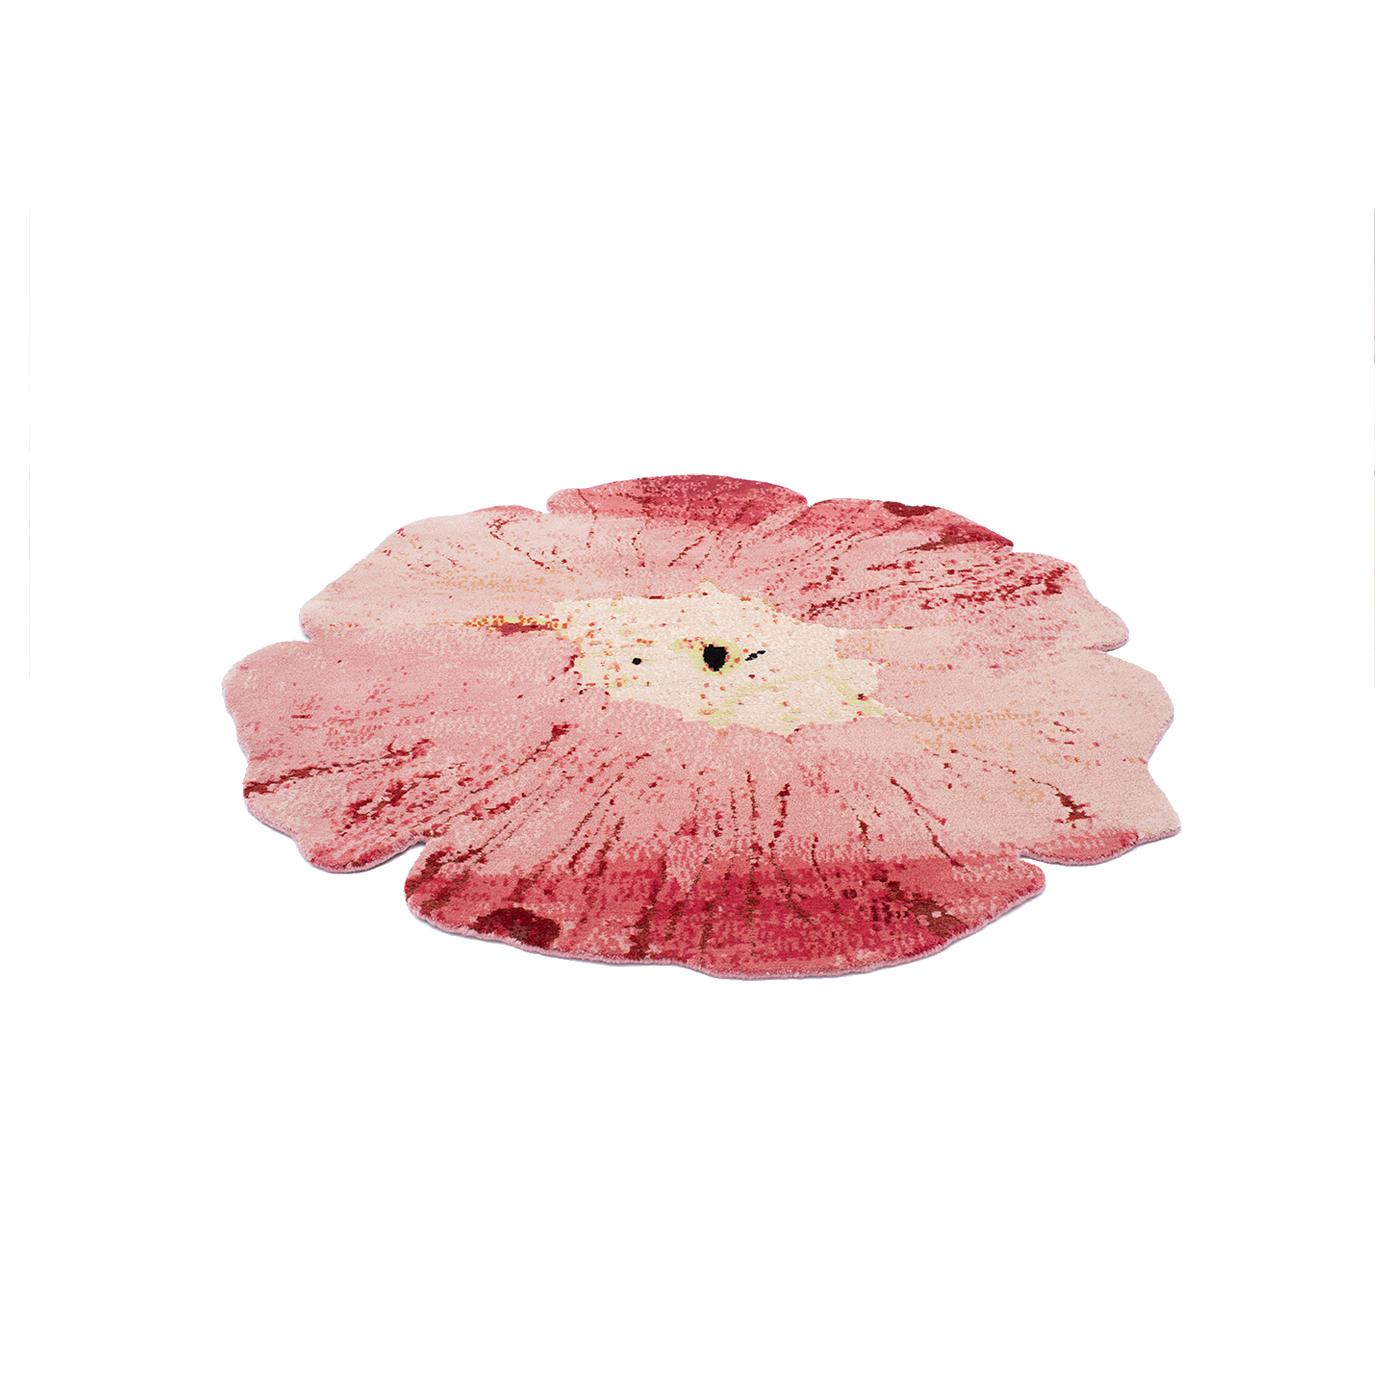 FARBE: Rosa
MATERIAL: 65% tibetische Wolle, 35% chinesische Seide
QUALITÄT: 100 Knoten/Zoll
URSPRUNG: Handgeknüpfter Teppich, hergestellt in Nepal
 
ANGEZEIGTE GRÖSSE des Teppichs: 120cm x 120cm Form
 
Fleur ist ein verspieltes, florales Design, das